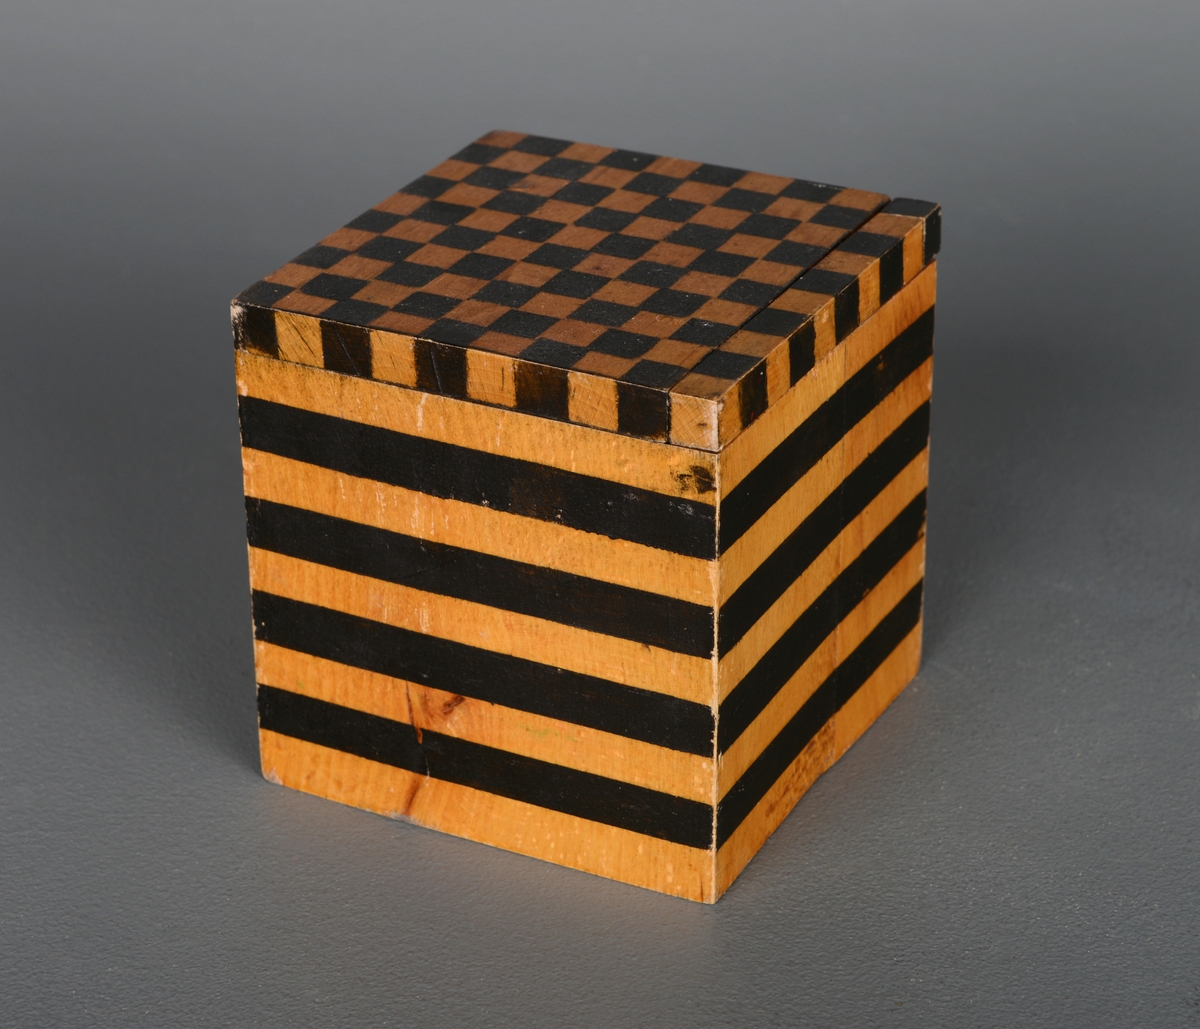 En kube av tre som ligger i en metallboks med lokk. Det ser ut som en 10cm3 kube, men den er ikke helt nøyaktig når man måler den. Den er satt sammen og limt litt ujevn. Kuben har sorte ruter i sjakkmønster av kvadratcentimeter på toppen og på øverste del av to av sidene. En av de øverste radene med 10 biter a 1cm3 kan tas ut. På to av sidene er det 1 centimeter brede linjer, men den nederste linjen er 1,3 cm bred, høyden blir 10 cm til sammen, men linjene er noe ujevnt plassert. Dybden og bredden er 9,6 cm. De tre andre flatene er blanke. Kuben er et visuelt hjelpemiddel for å anskueliggjøre hvordan man måler volum. Metallboksen er akkurat stor nok til å få plass til kuben.